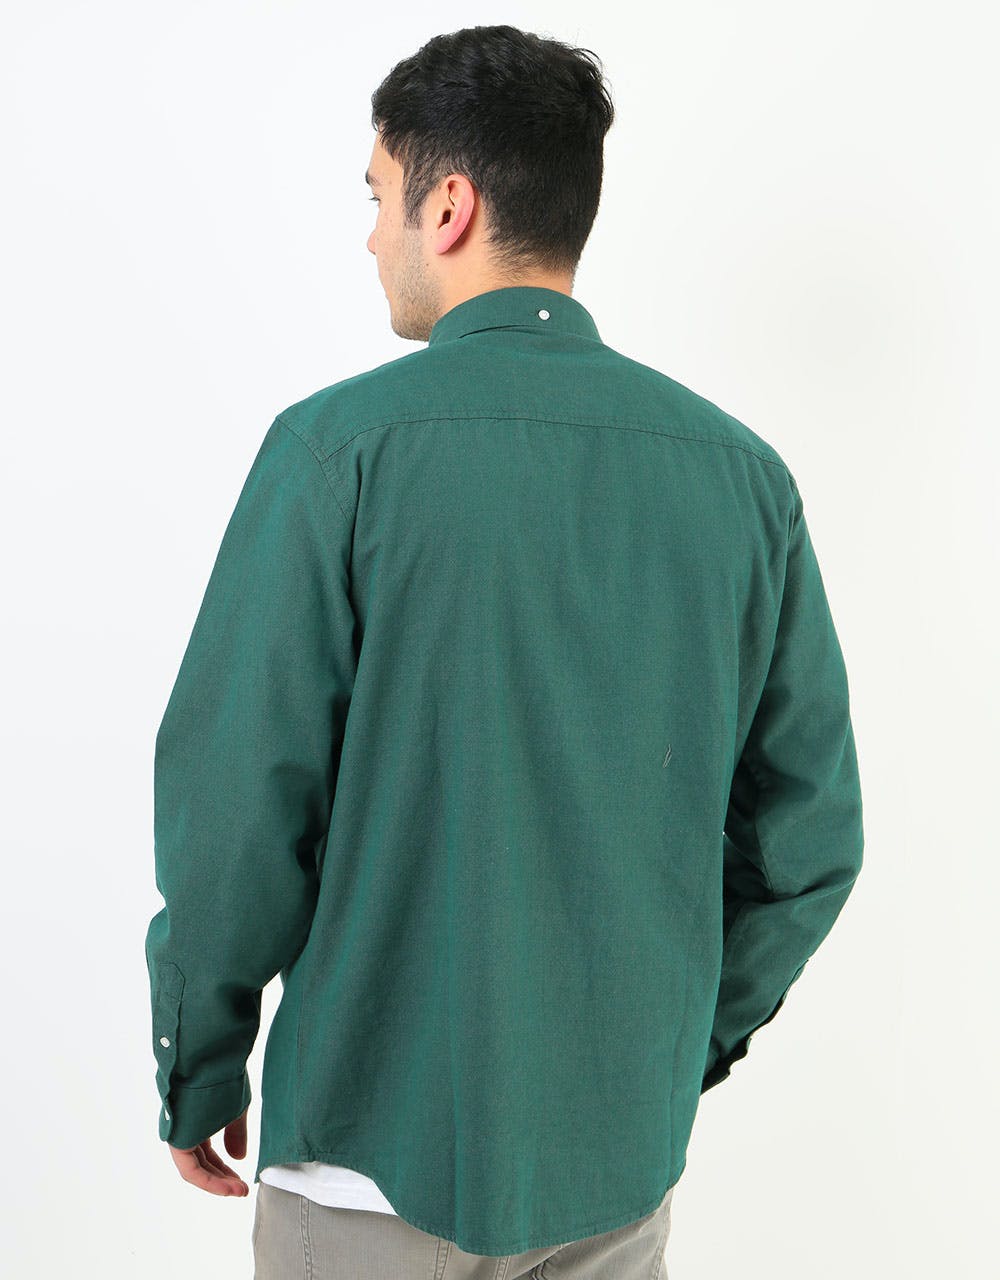 Carhartt WIP L/S Dalton Shirt - Dark Fir/Leaf (Heavy Rinsed)